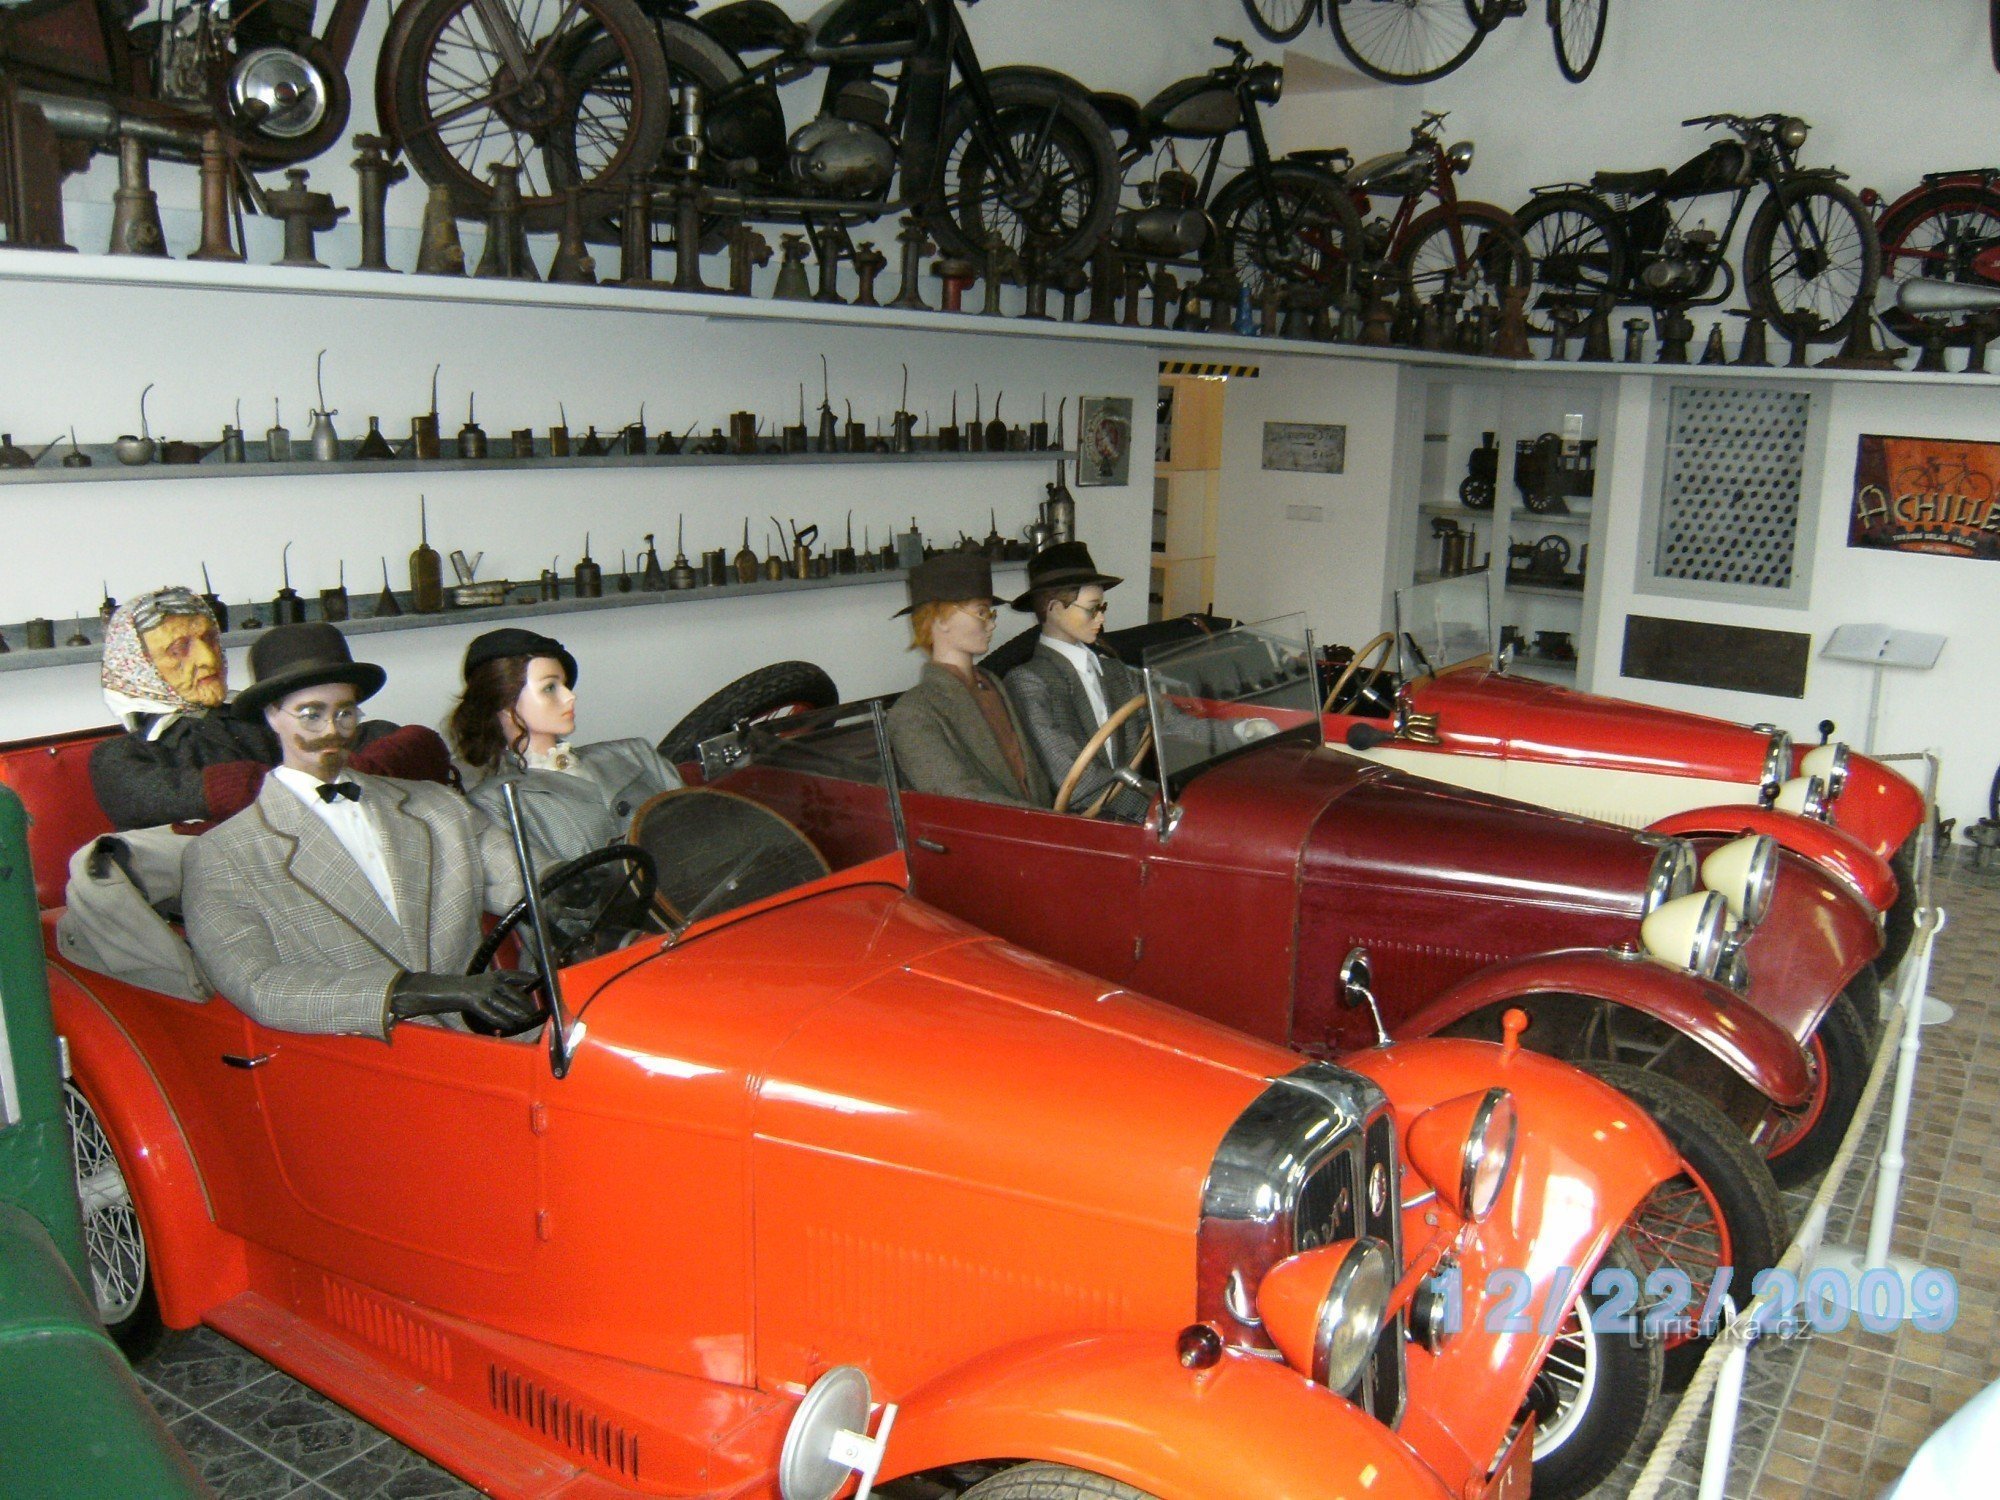 Znojmo - Motoring Museum